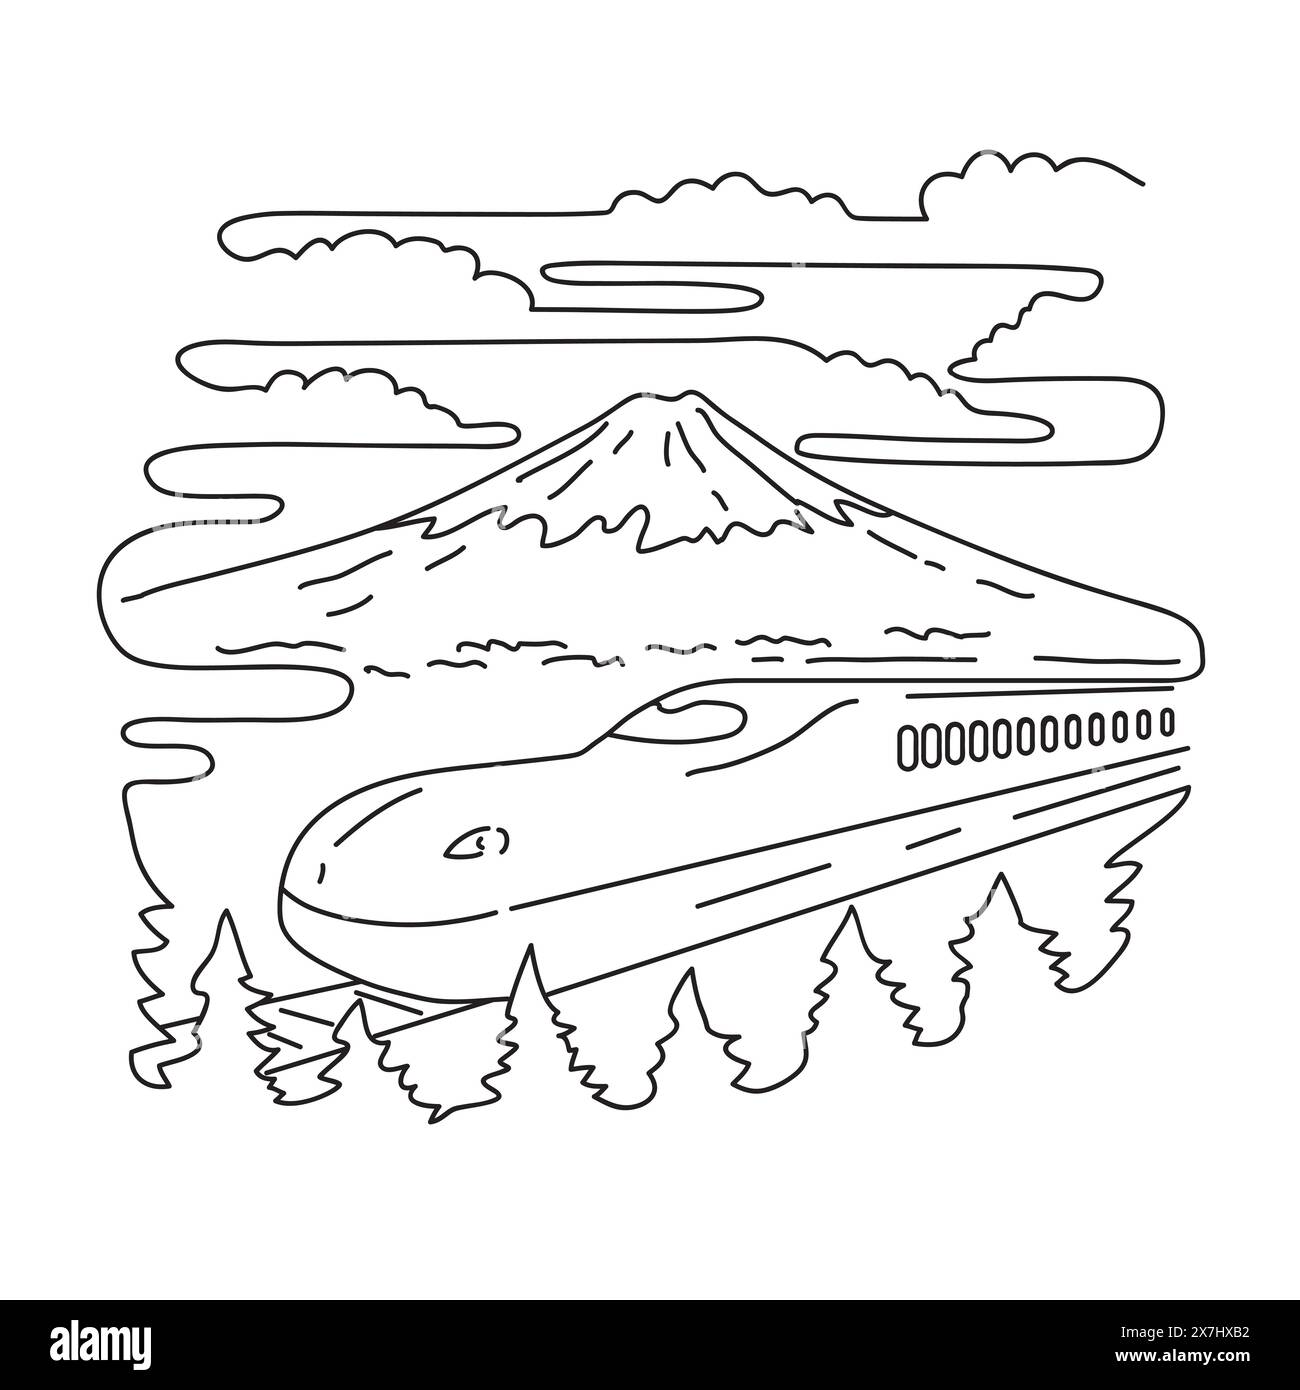 Illustrazione mono line del Monte Fuji e del treno proiettile Shinkansen sull'isola di Honshu all'interno del Parco Nazionale Fuji-Hakone-Izu in Giappone fatto in monolina Illustrazione Vettoriale